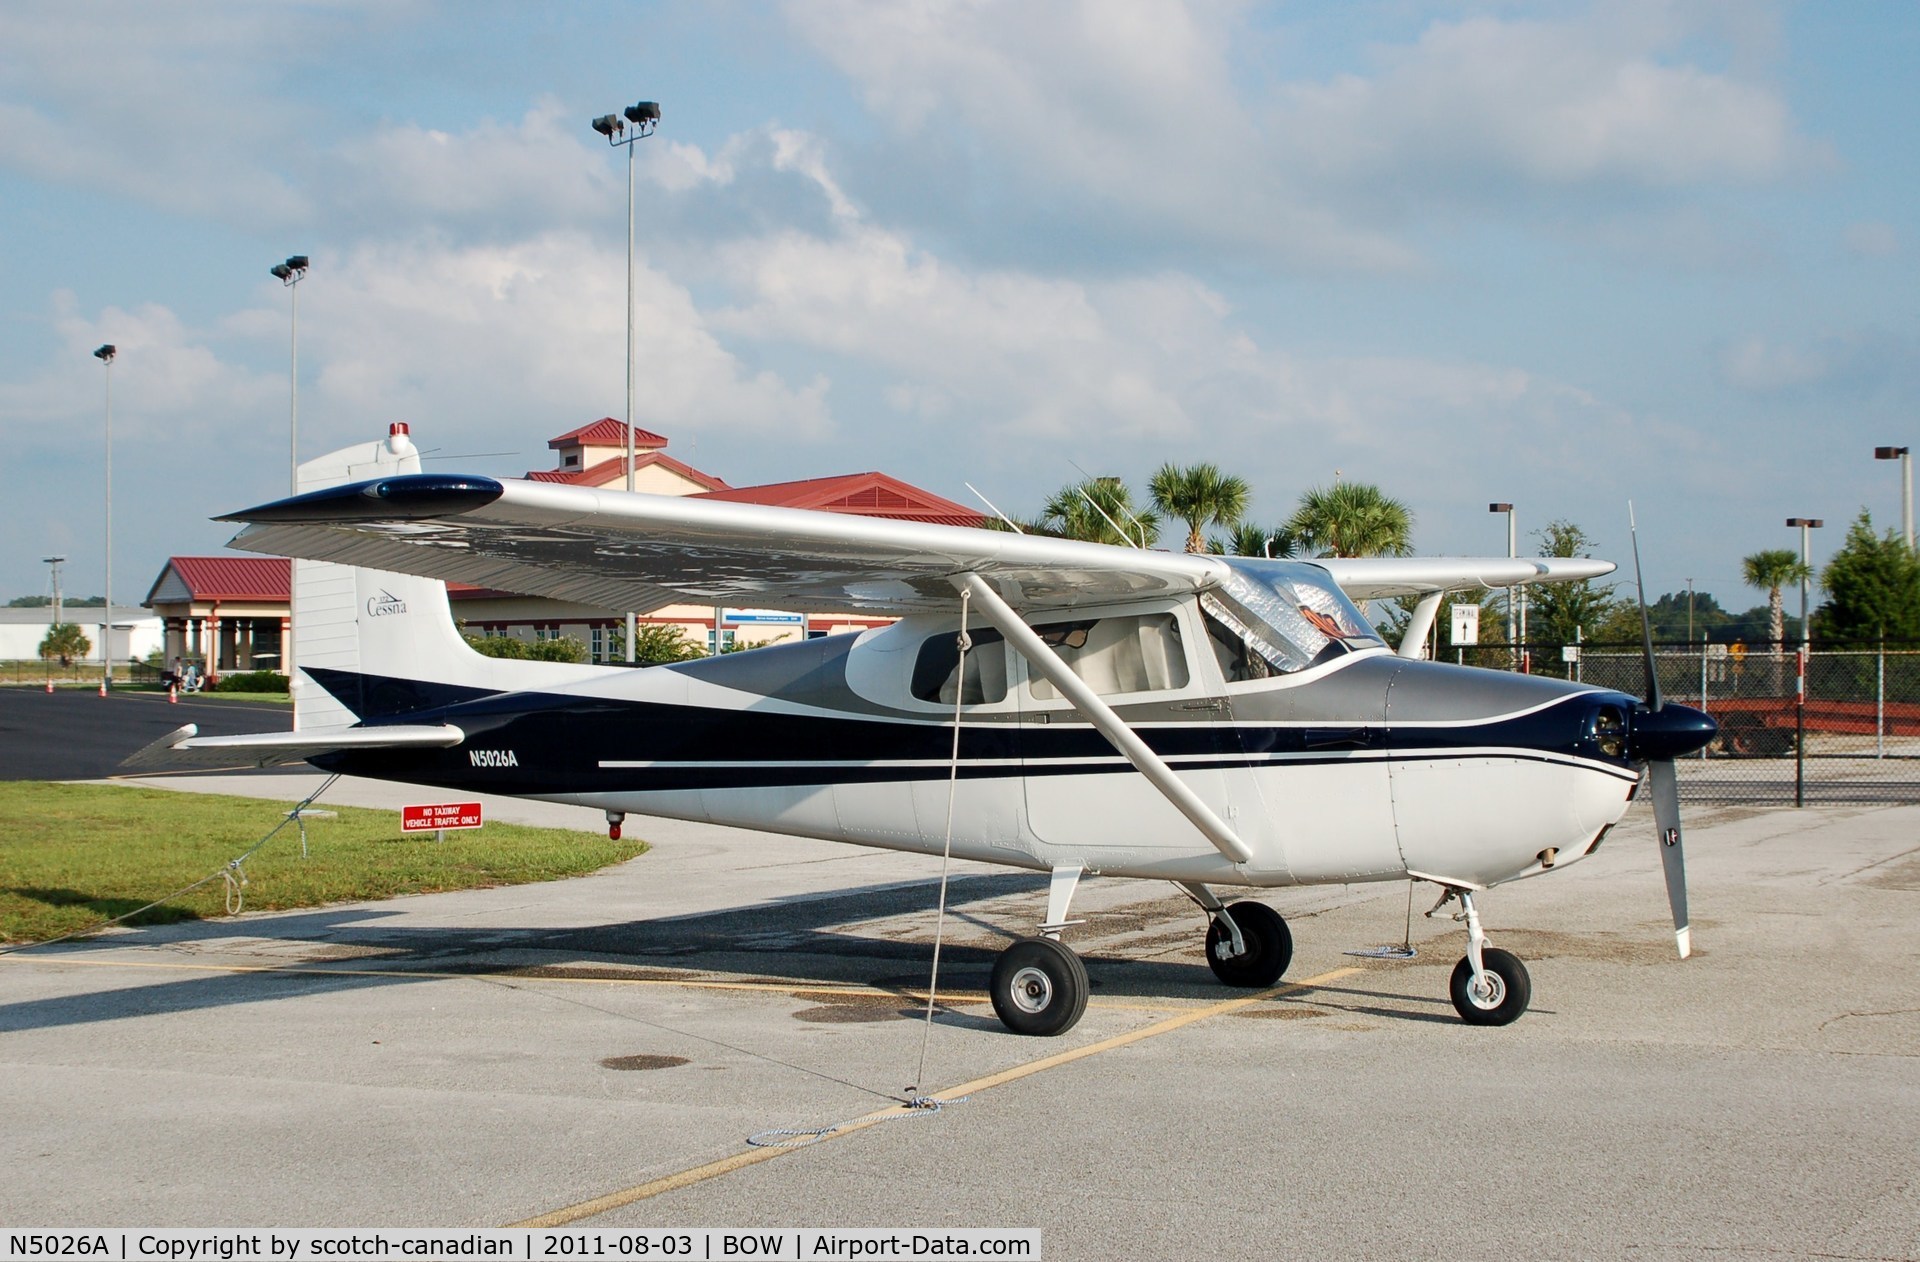 N5026A, 1955 Cessna 172 C/N 28026, 1955 Cessna 172 N5026A at Bartow Municipal Airport, Bartow, FL